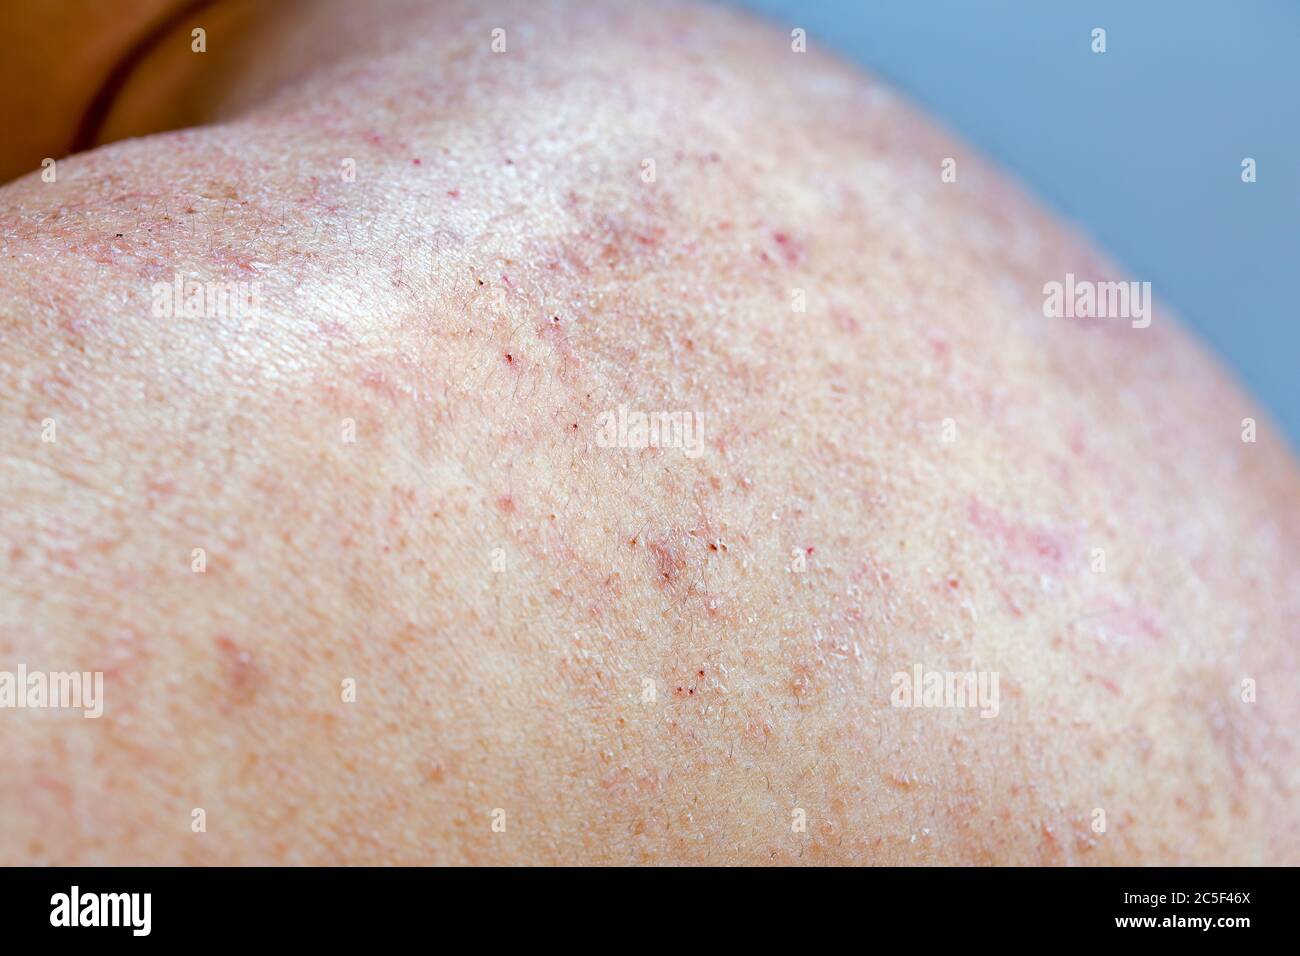 Photographie de gros plan extrême des symptômes de la dermatite atopique sur l'épaule gauche d'un homme adulte. Banque D'Images